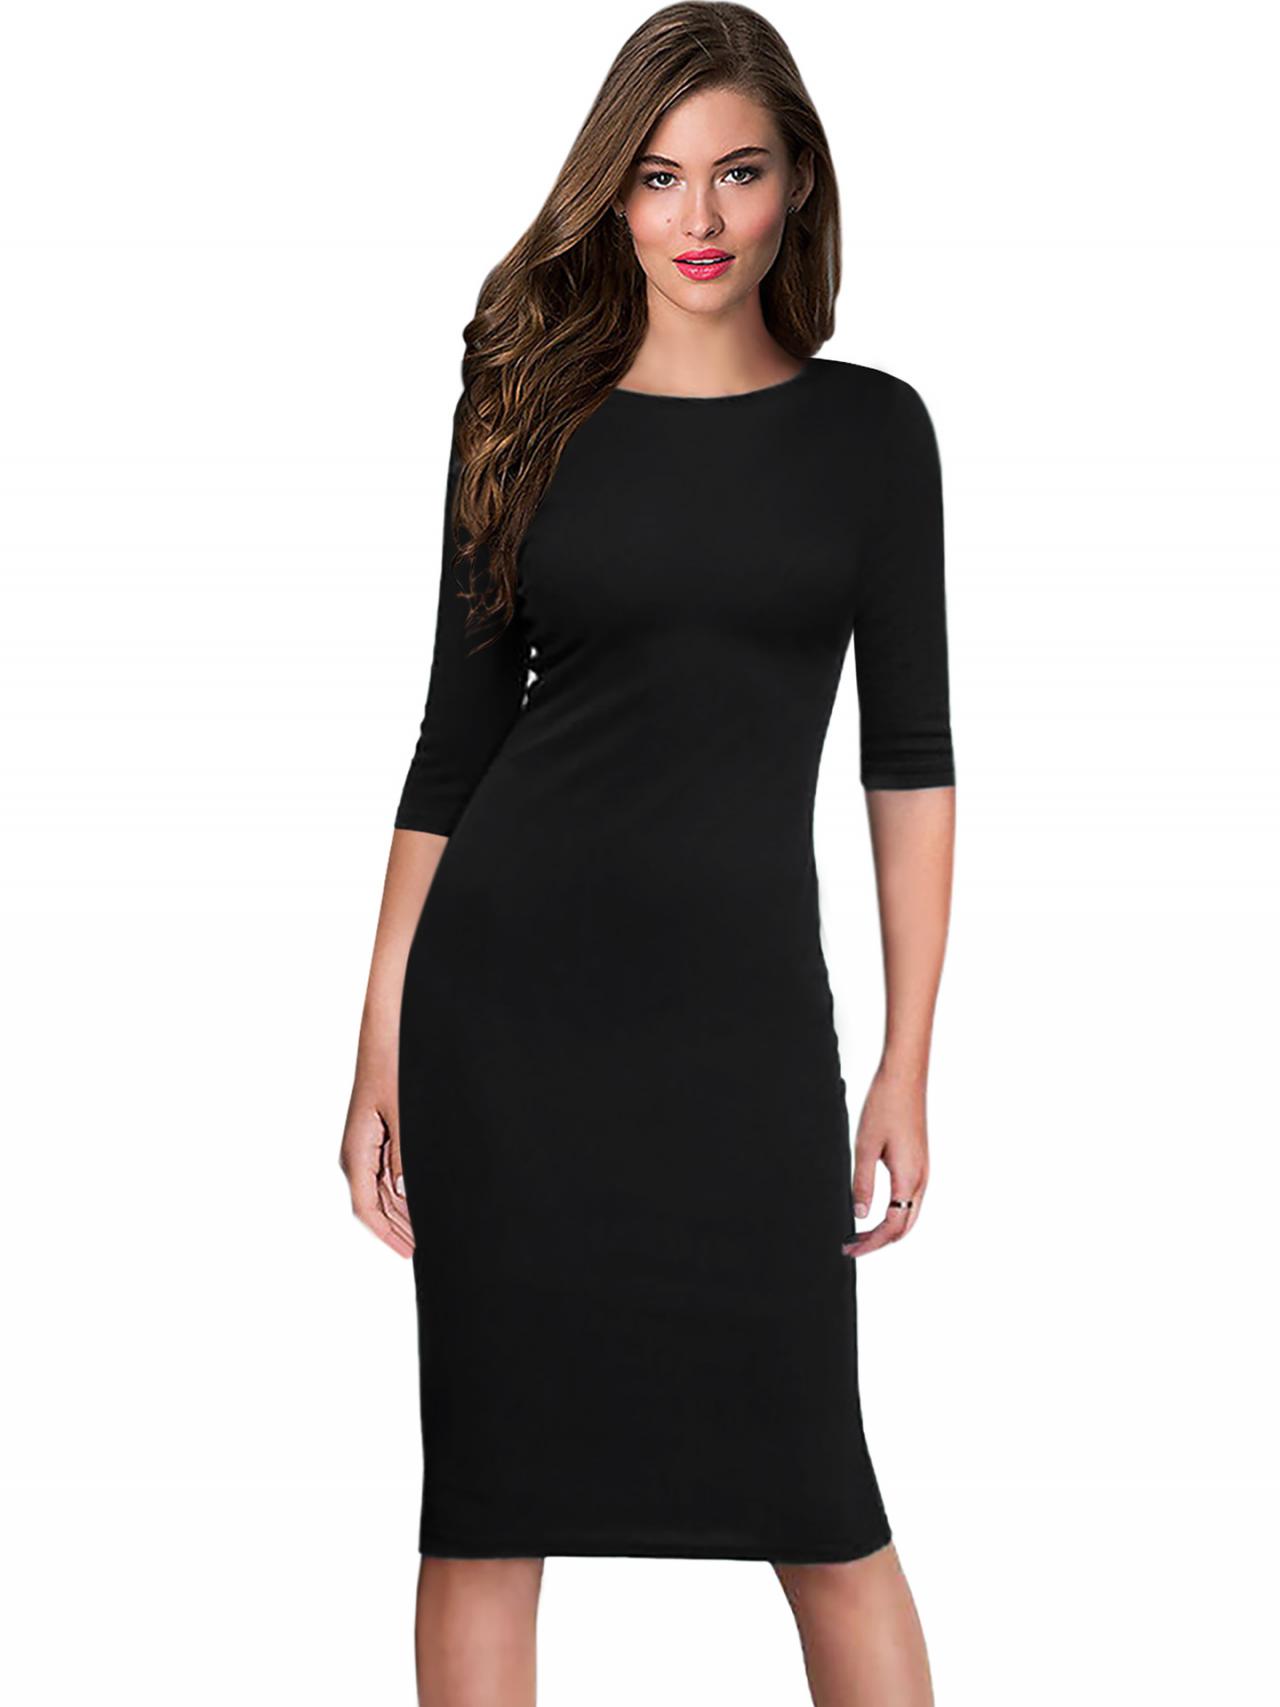 slimming black dress with sleeves